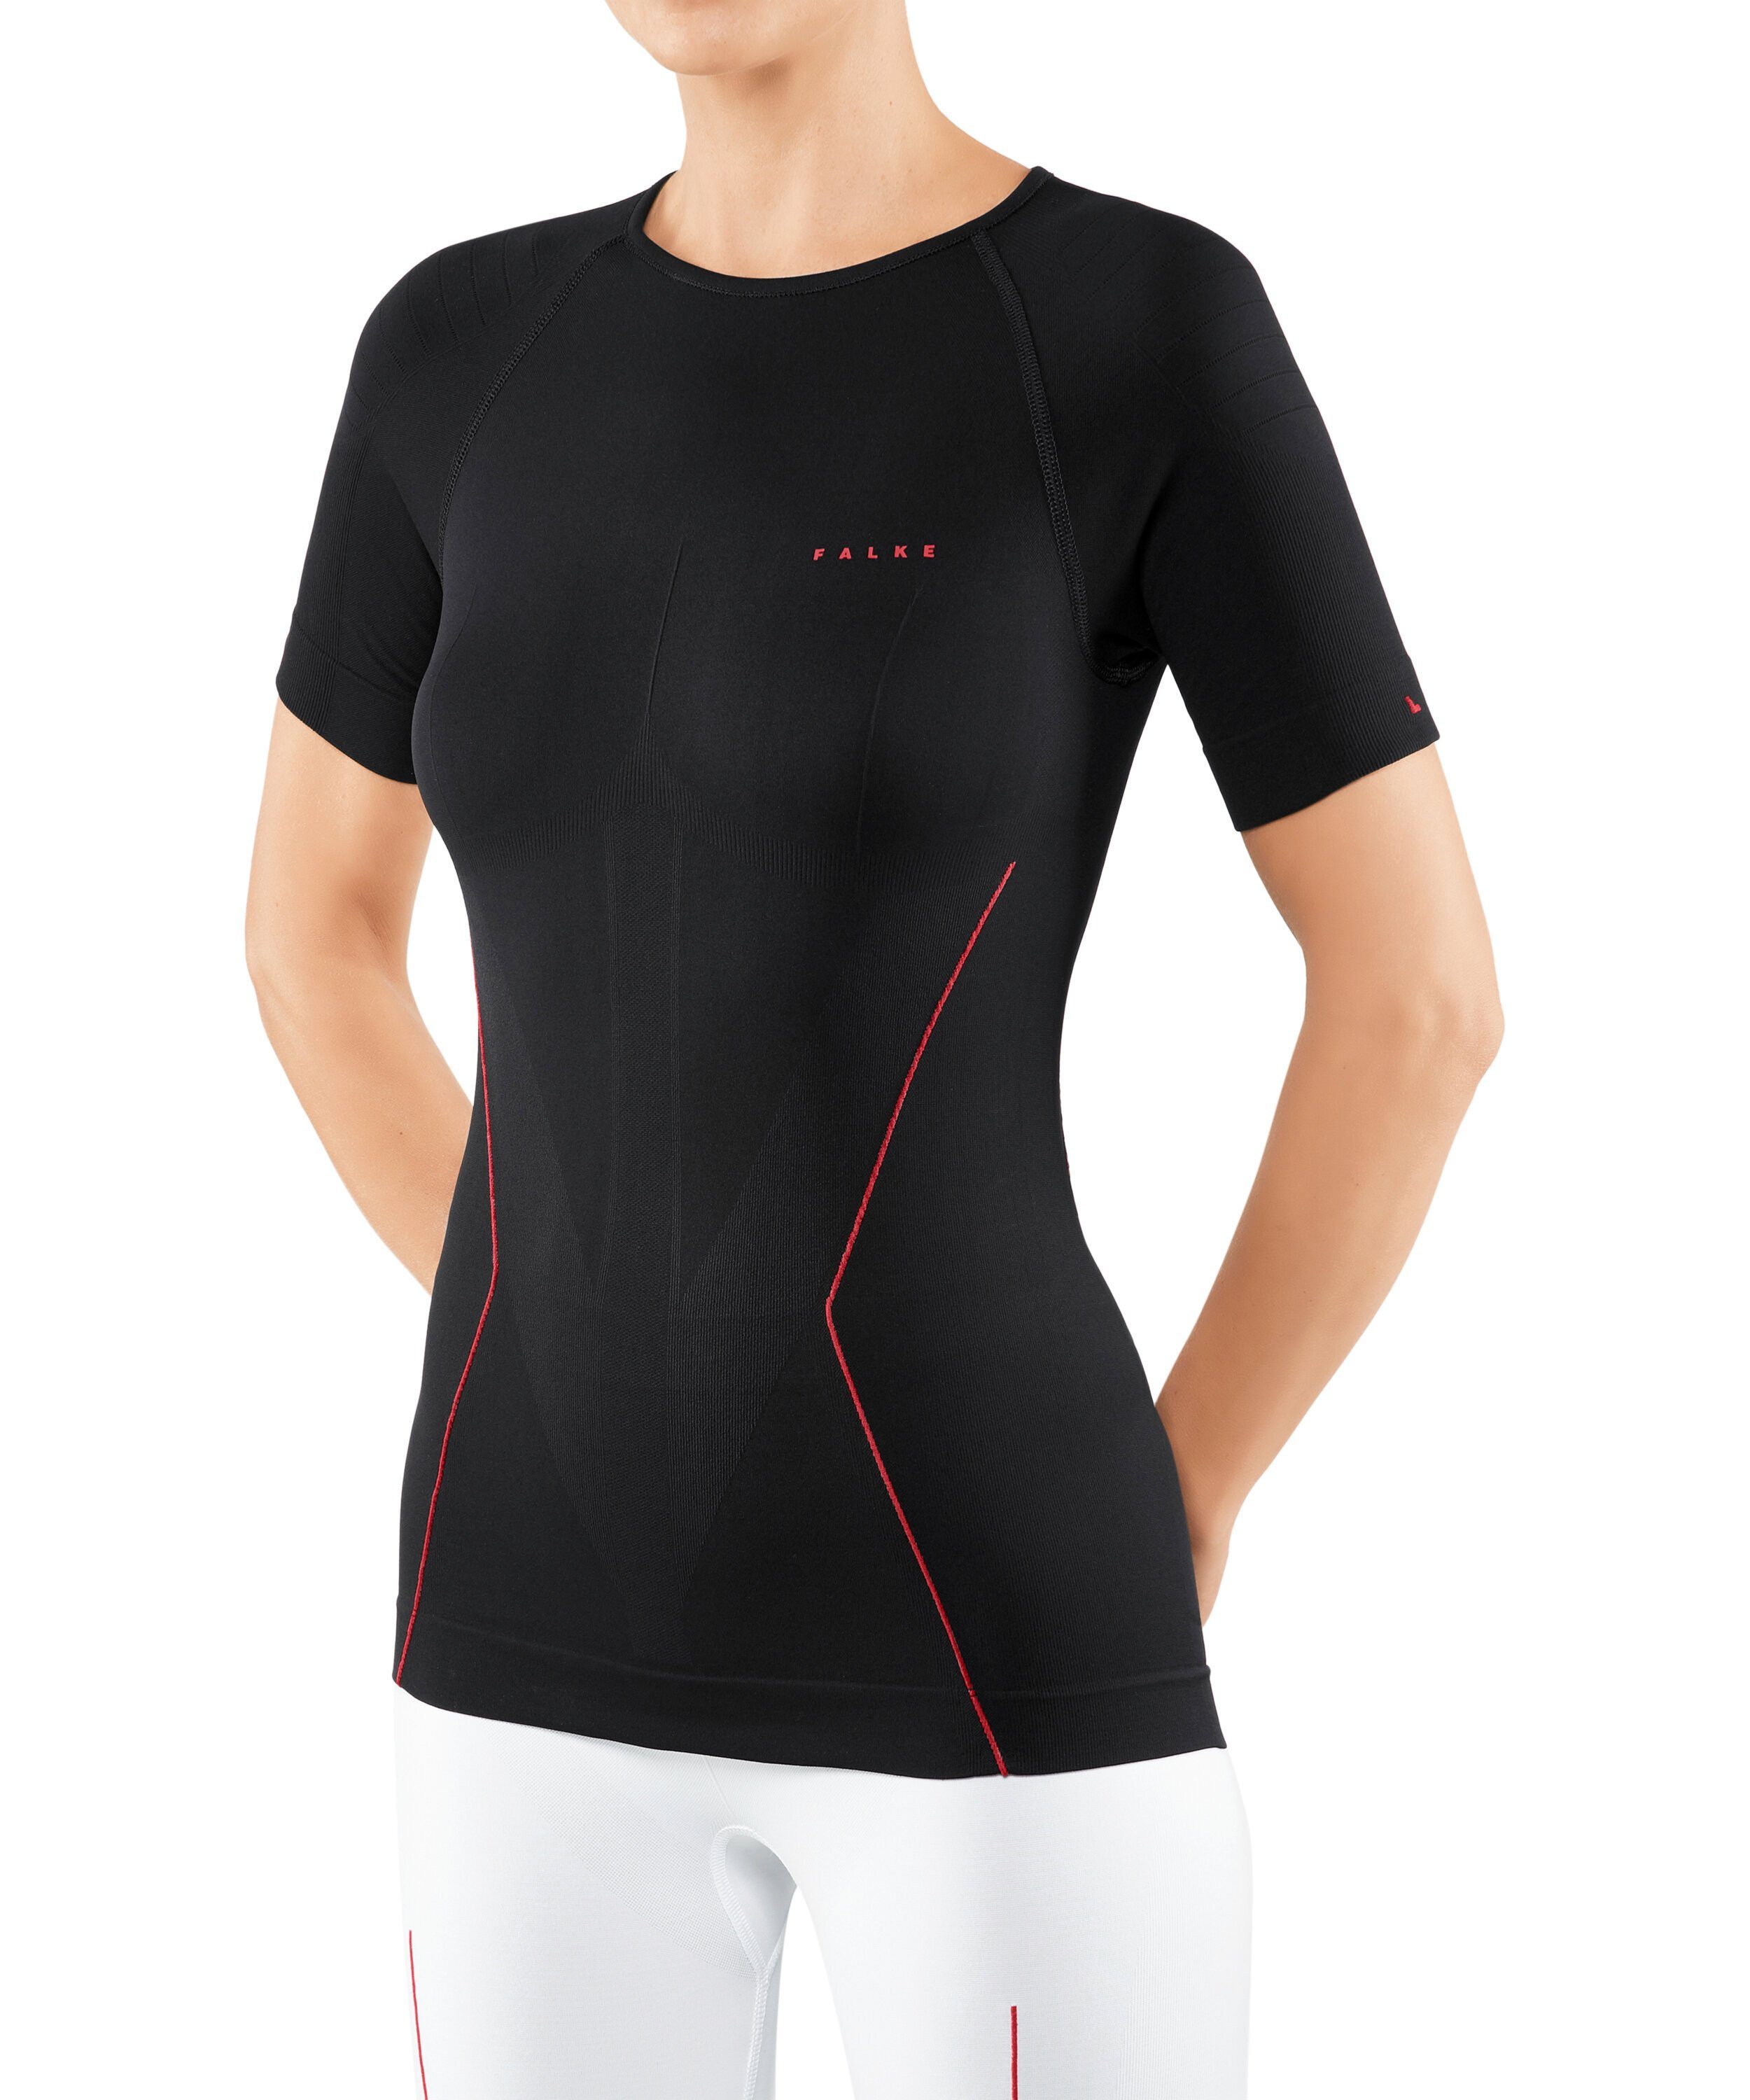 & Bademode Sportmode Shirts OTTO Damen Sport Trainingsshirt aus Quick Dry Material Schnelltrocknend 